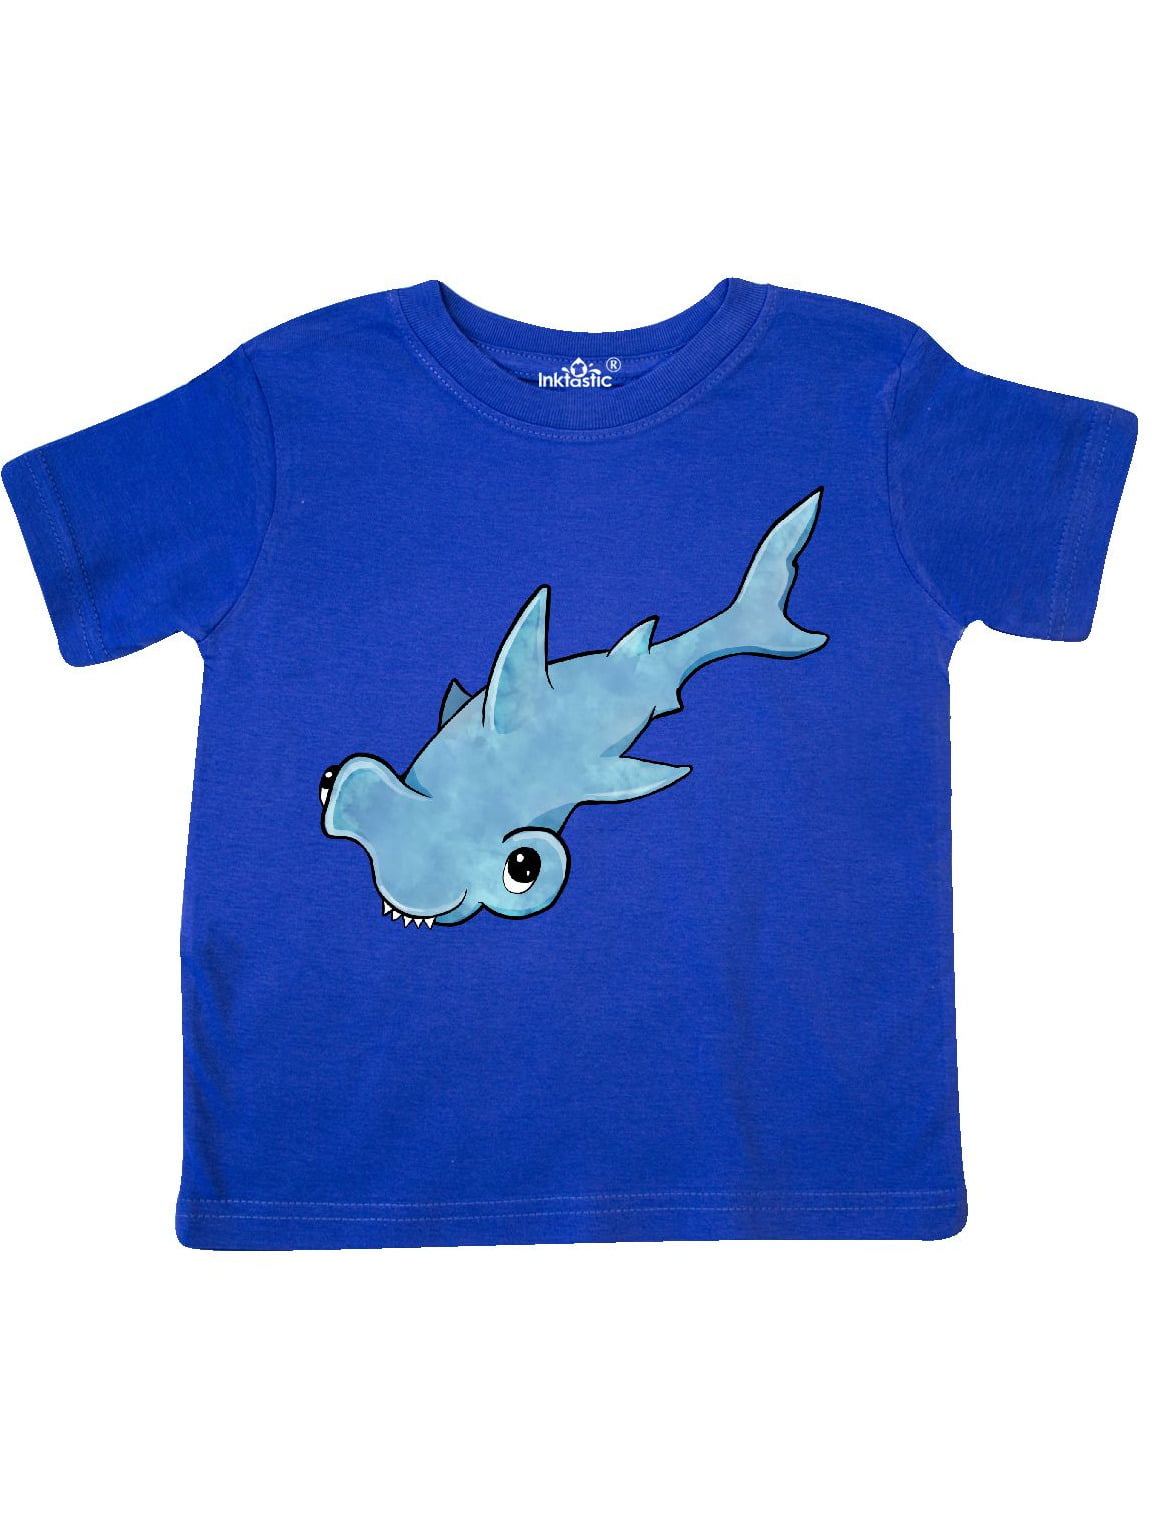 INKtastic - Cute Hammerhead Shark Toddler T-Shirt - Walmart.com ...